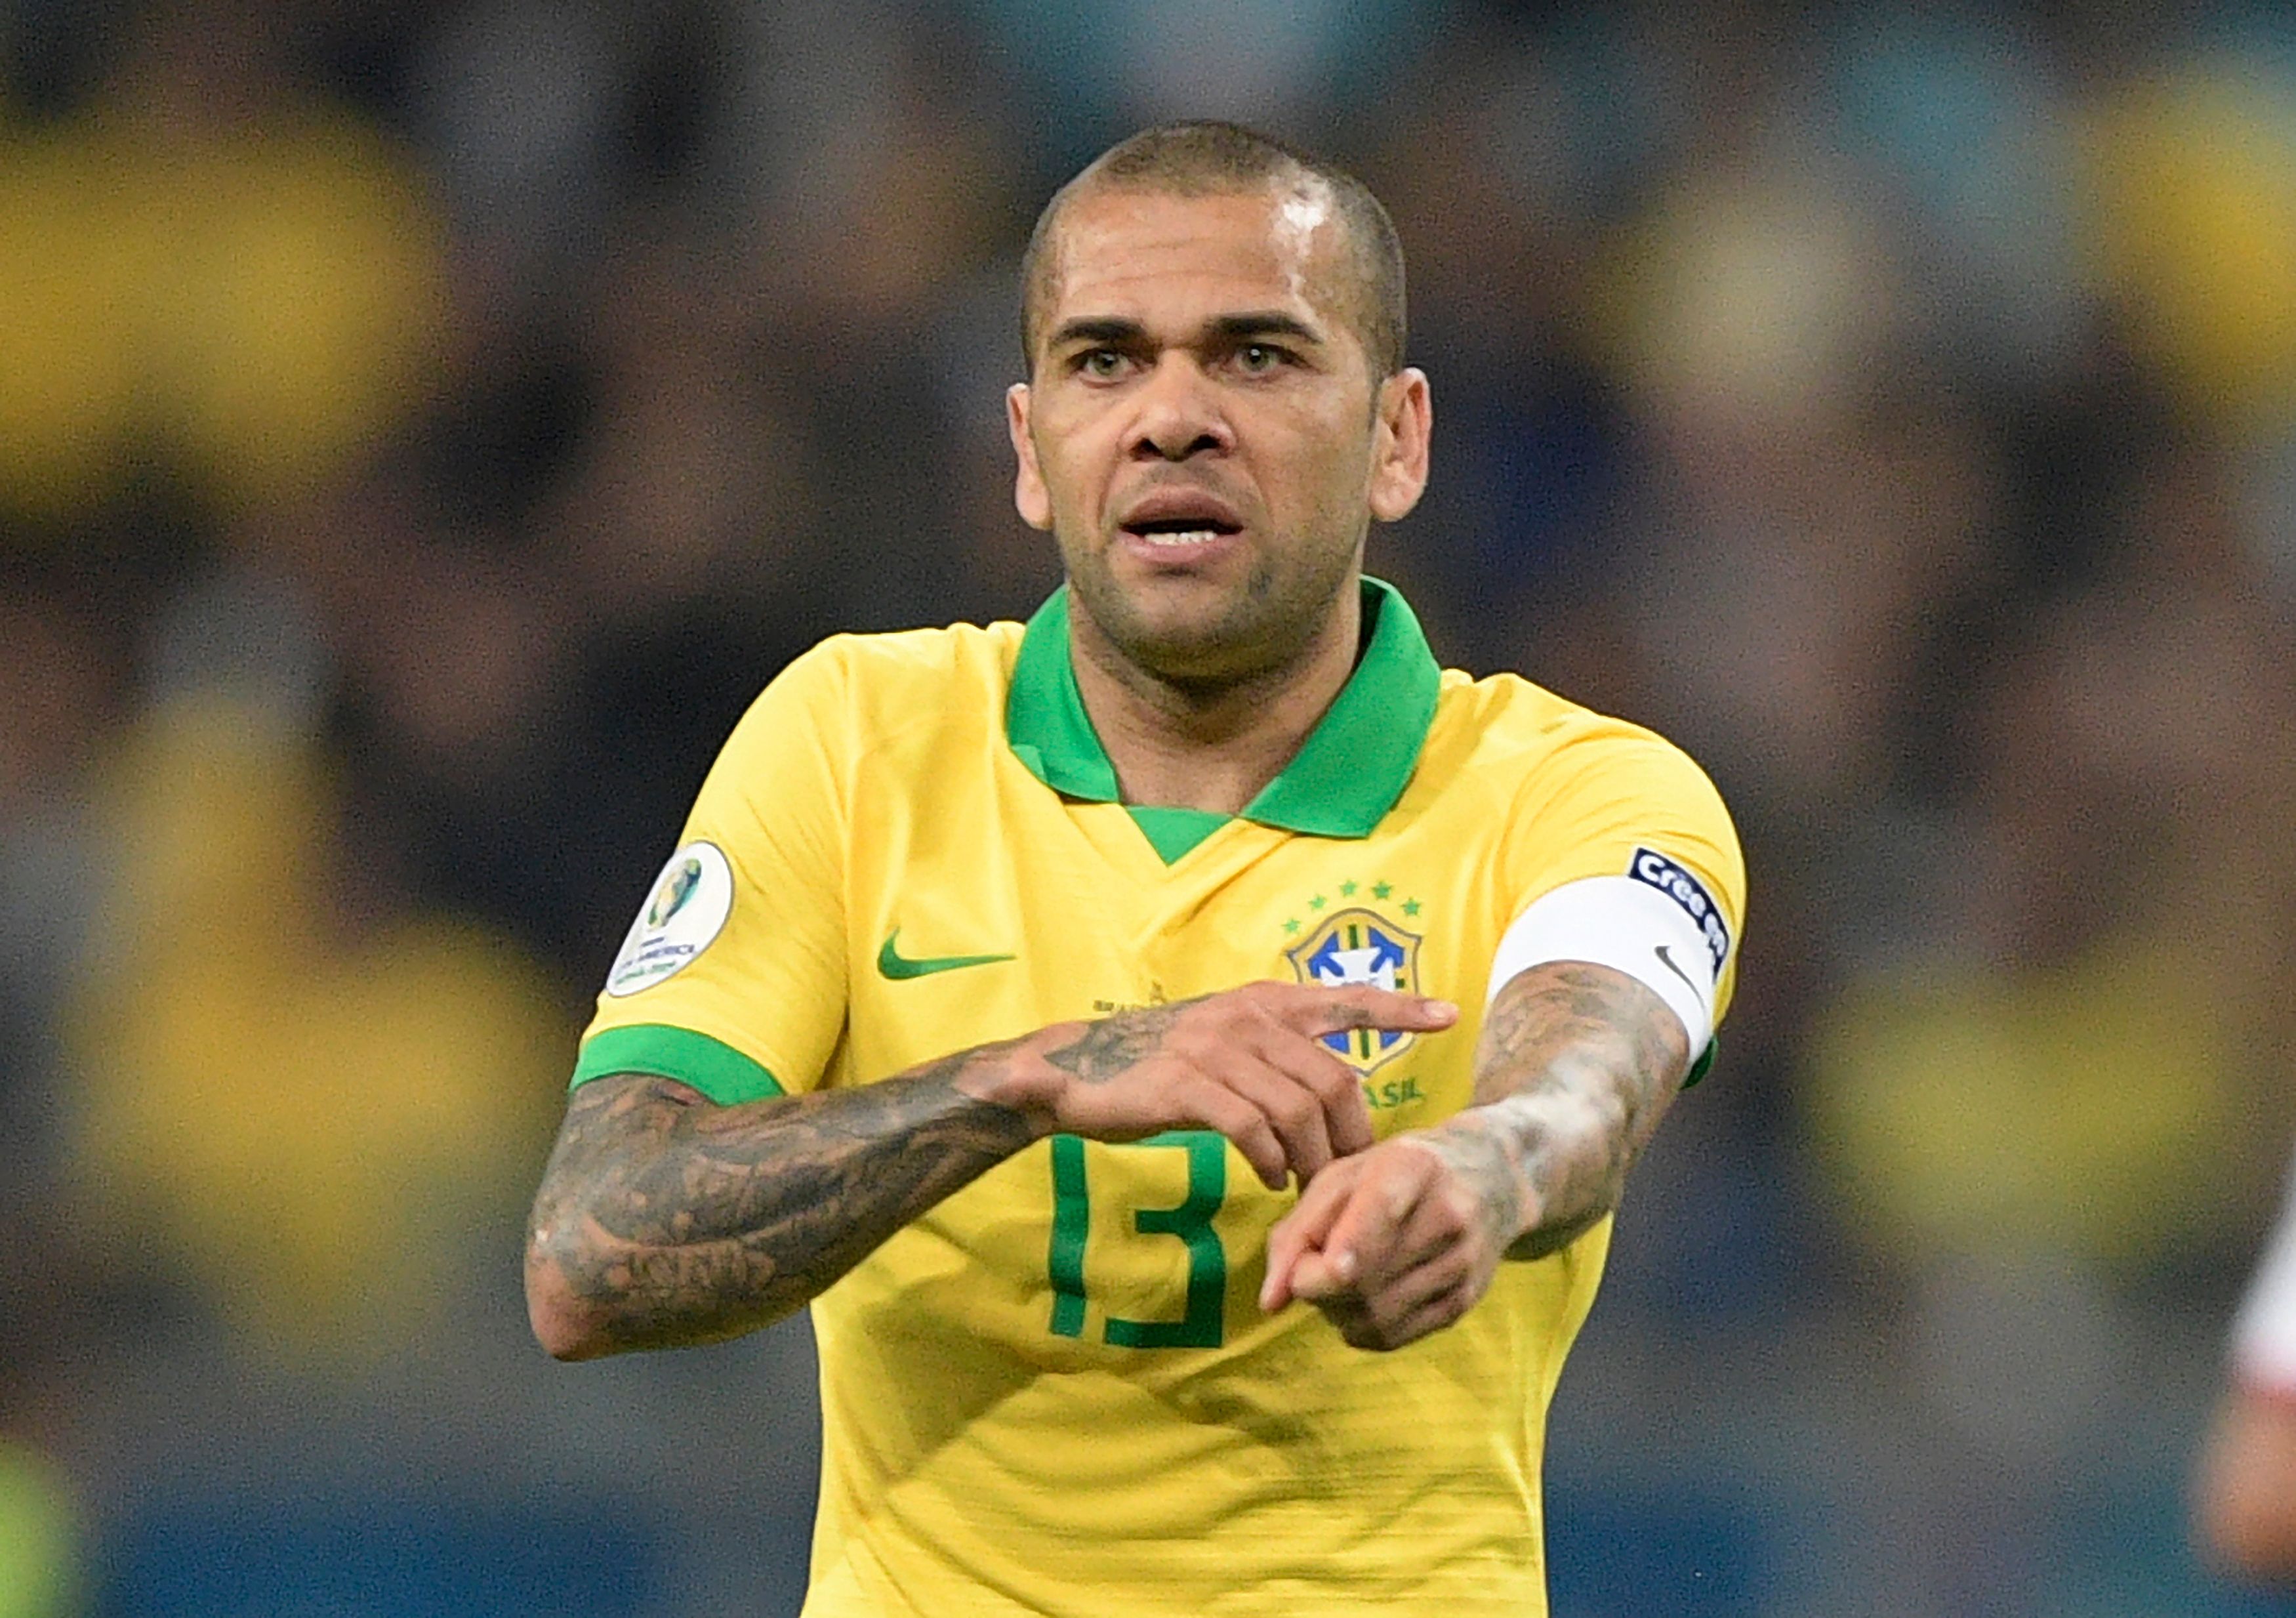 Der brasilianische Star ist einer der höchstdekorierten Fußballer aller Zeiten, war aber in den letzten Monaten mit den schockierenden Vorwürfen gegen ihn beschäftigt